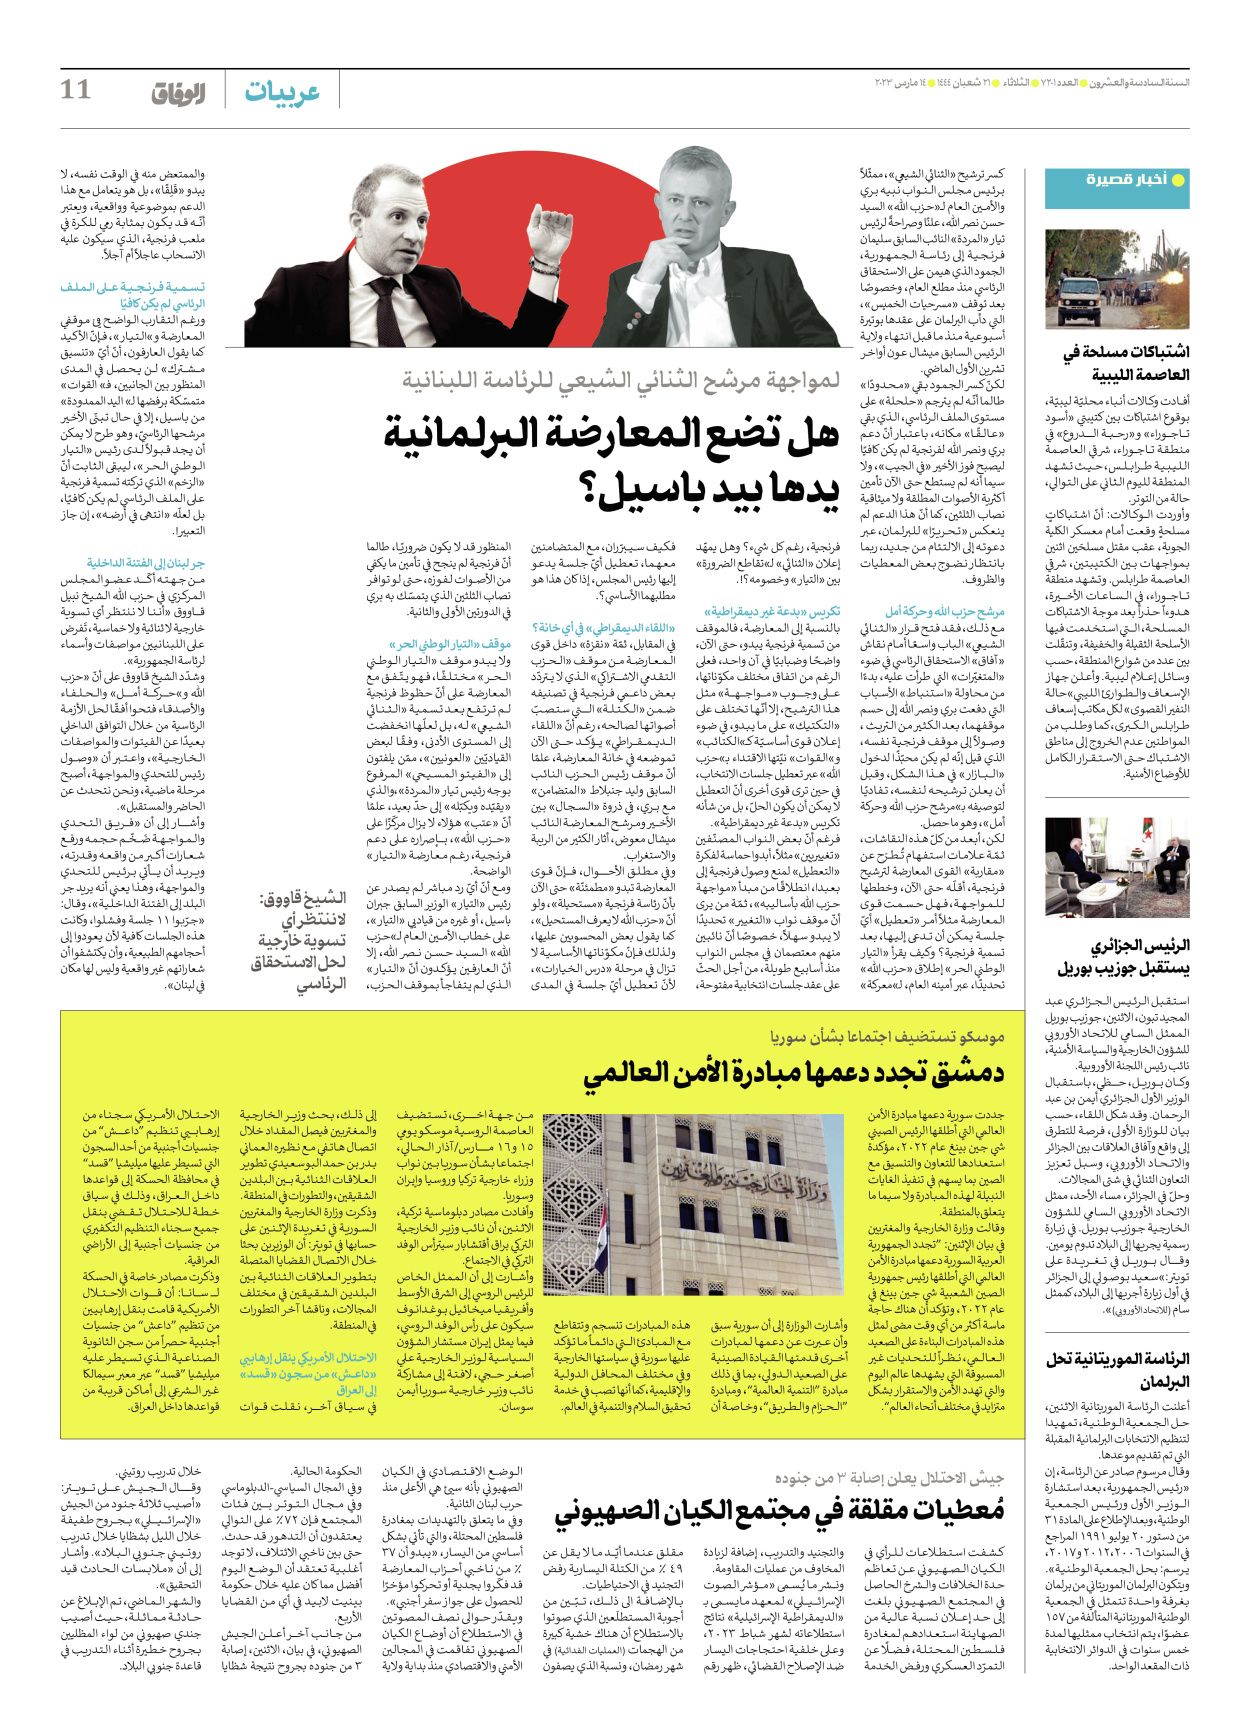 صحیفة ایران الدولیة الوفاق - العدد سبعة آلاف ومائتان وواحد - ١٤ مارس ٢٠٢٣ - الصفحة ۱۱